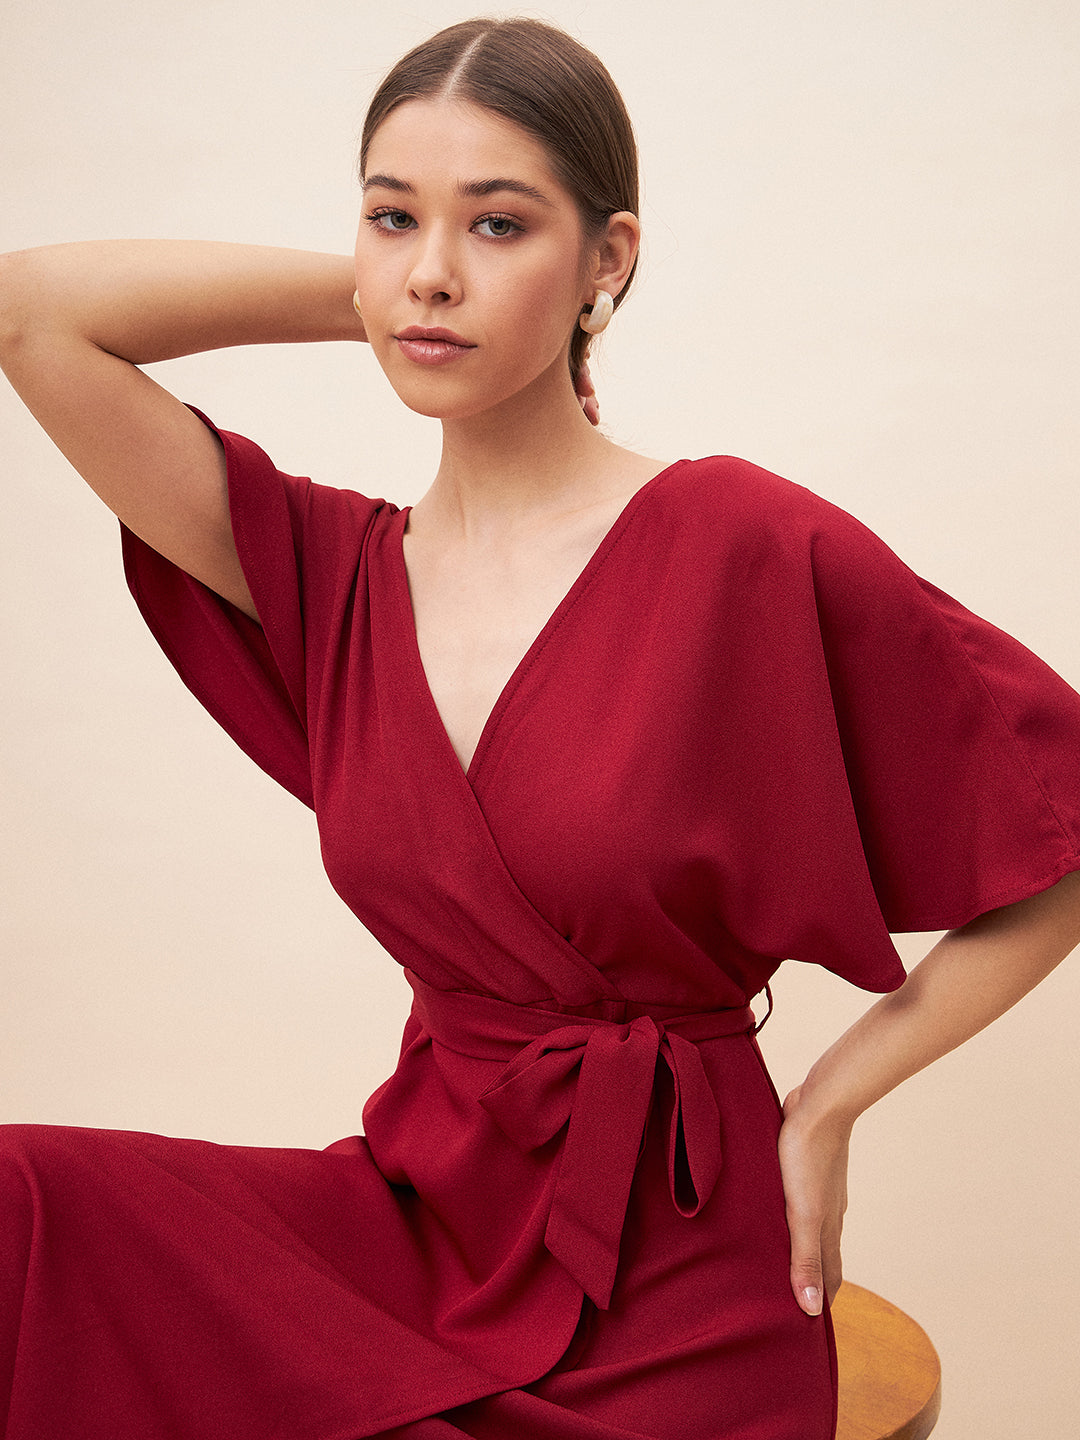 Red Kimono Wrap Maxi Dress